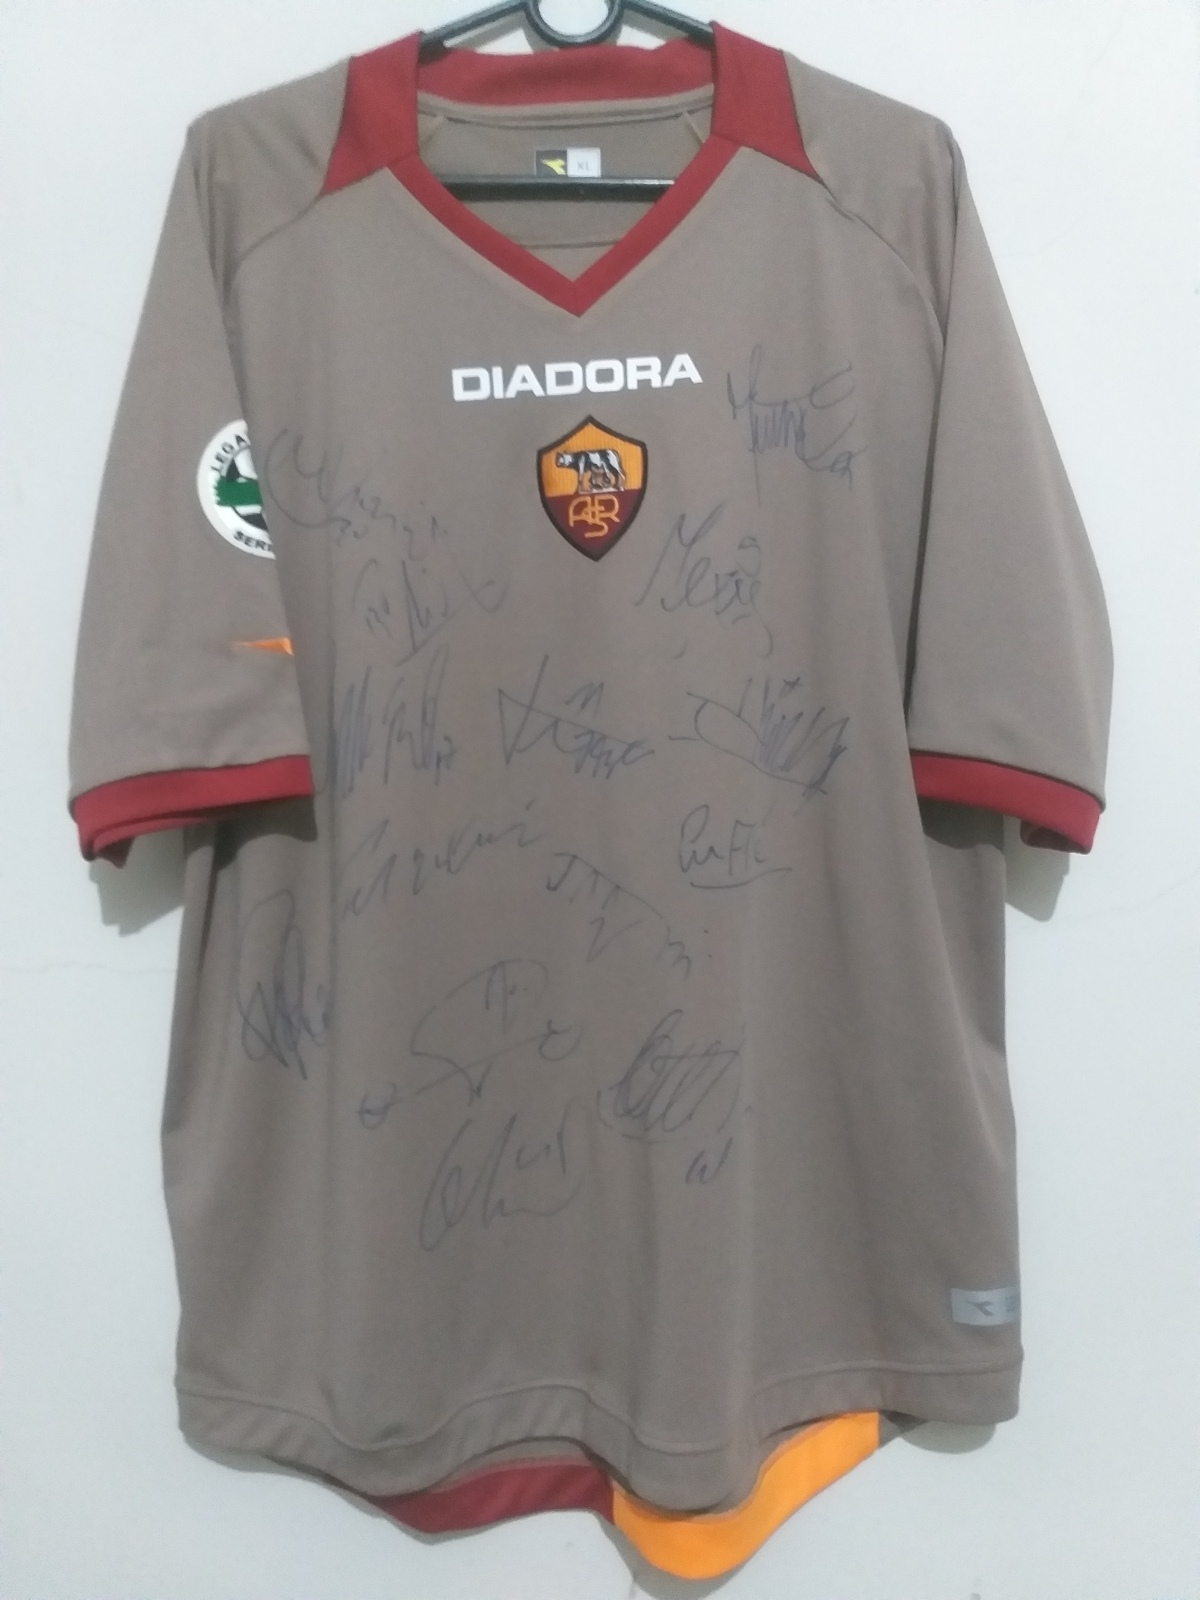 Jersey / Shirt AS Roma Season 2006-2007 #10 Totti - Match Worn & Autographed  - $1,500.00